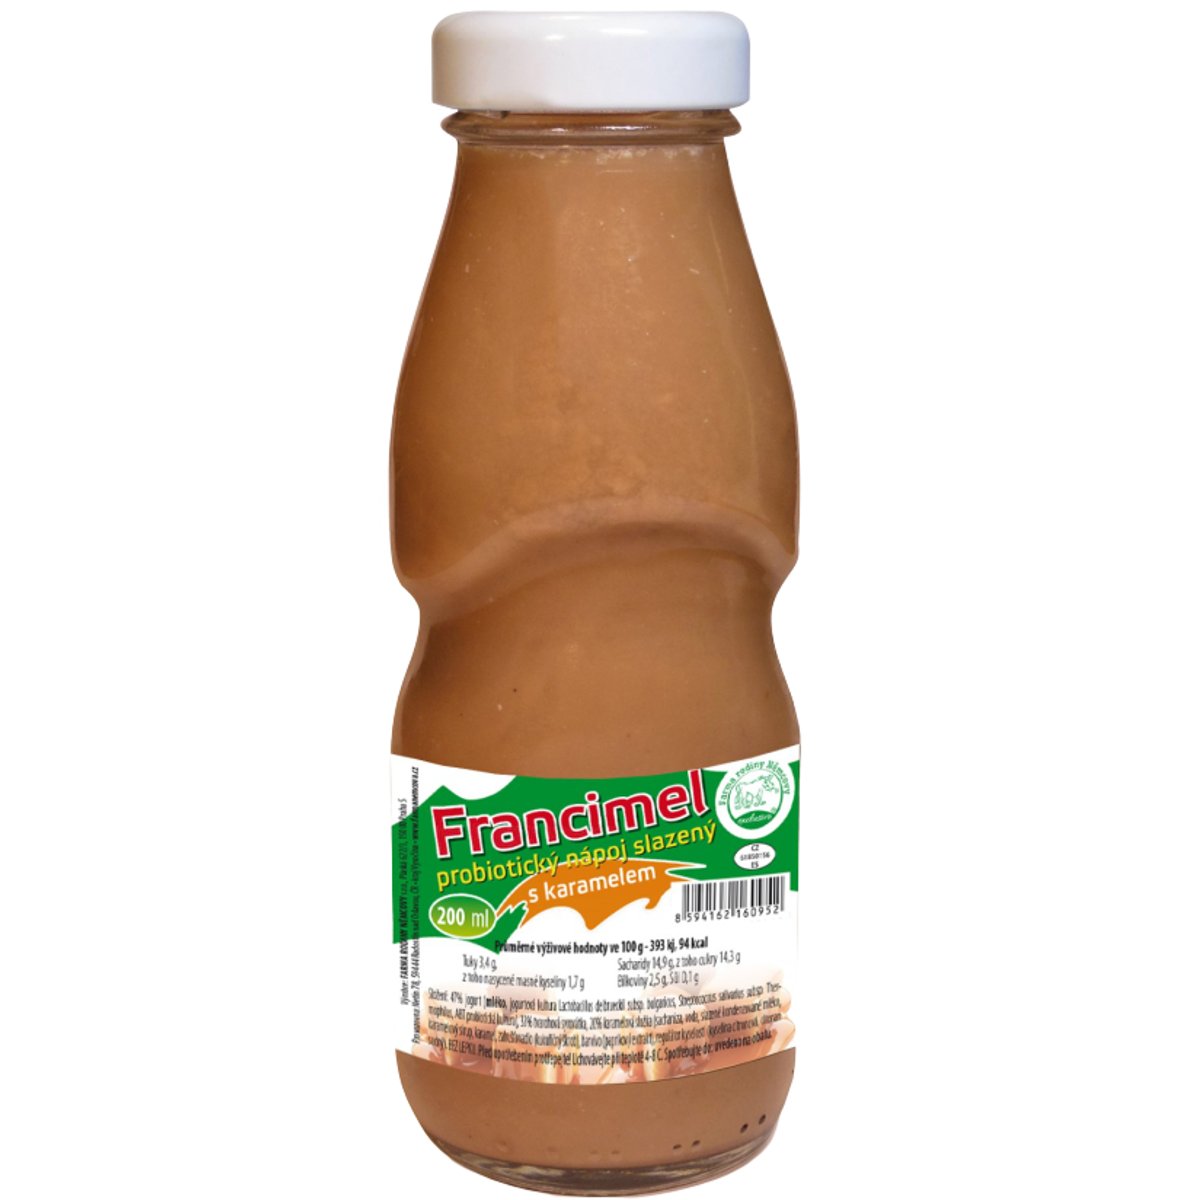 Farma rodiny Němcovy Francimel probiotický nápoj s karamelem